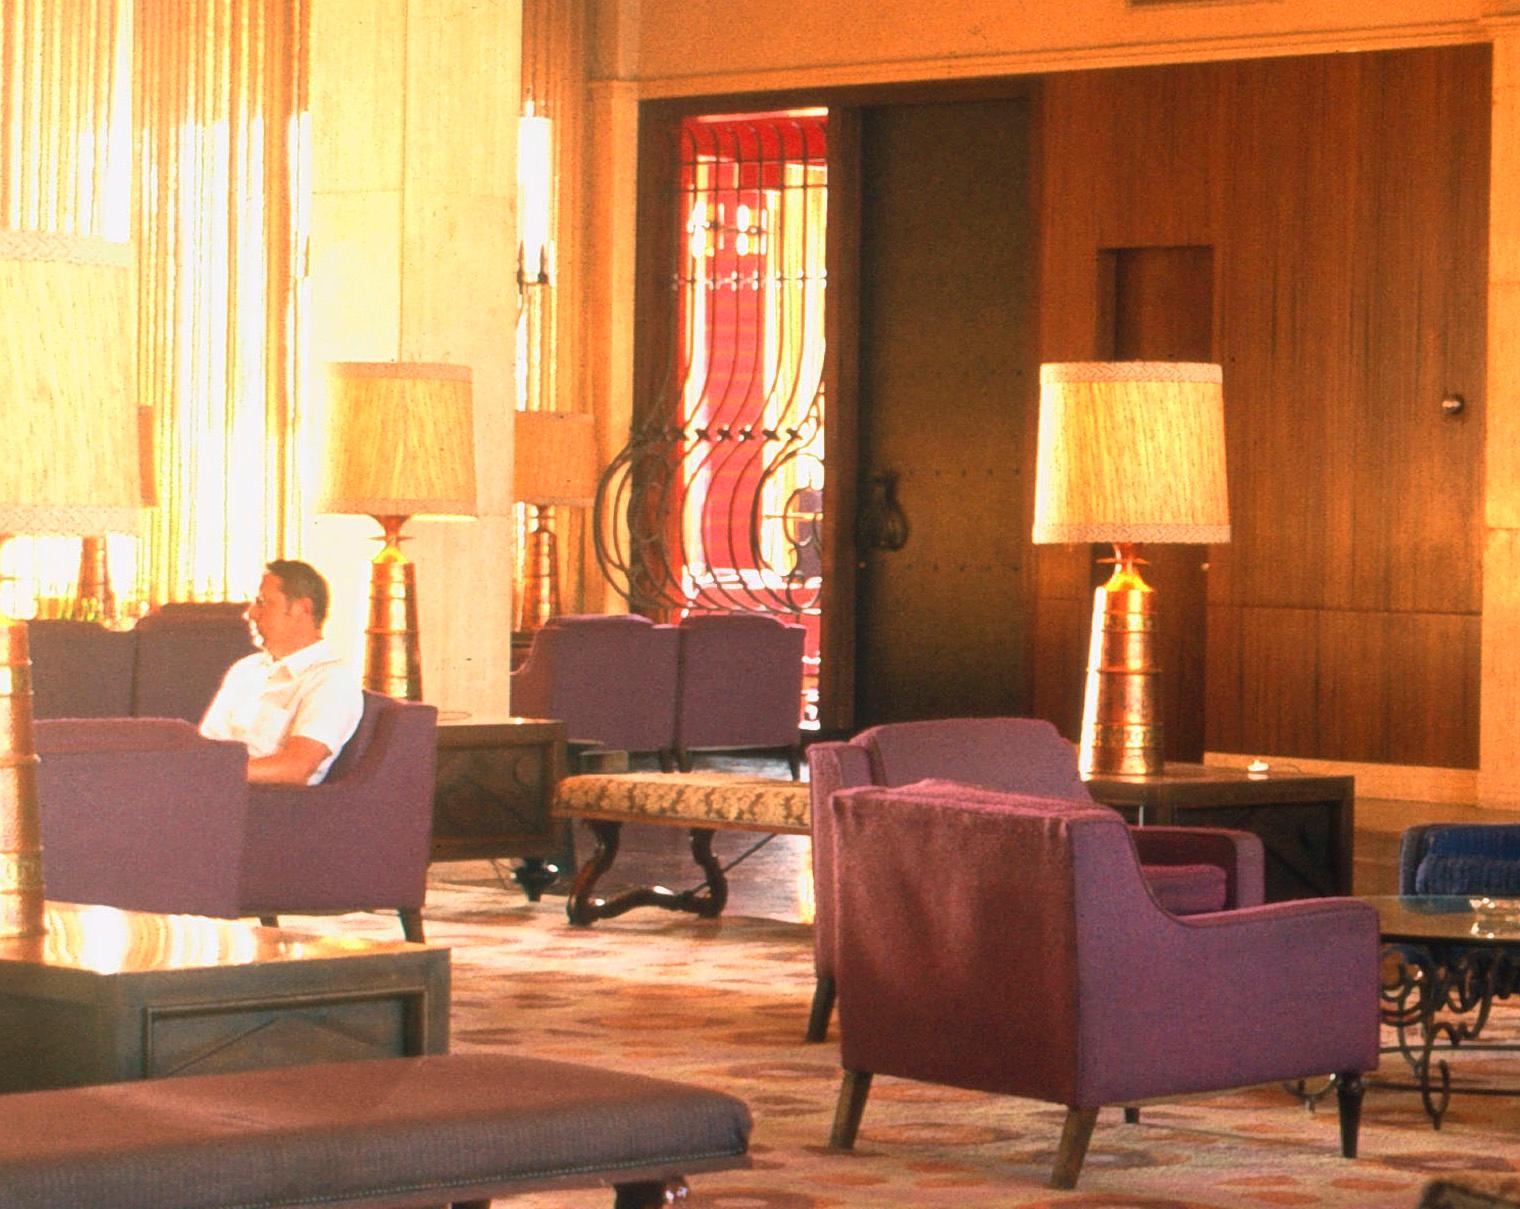 Lobby rétro de l'hôtel des années 1970, édition limitée, imprimé ultérieurement - Moderne Photograph par Walter Rudolph